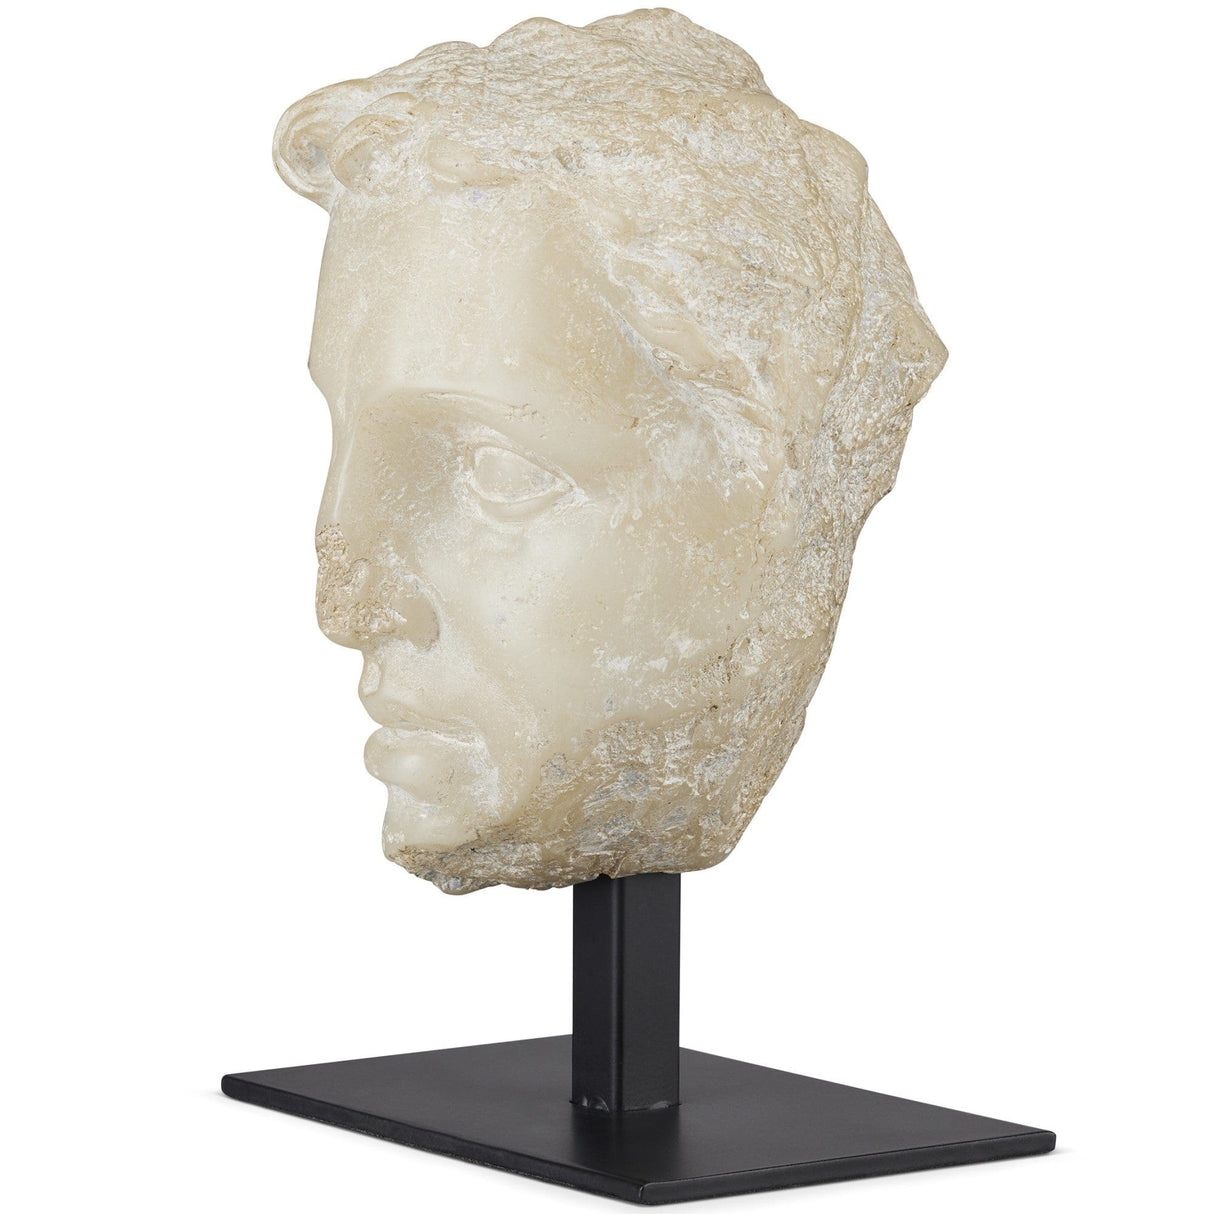 Currey & Company Greek Princess Head Fragment Sculptures & Statues currey-co-1200-0734